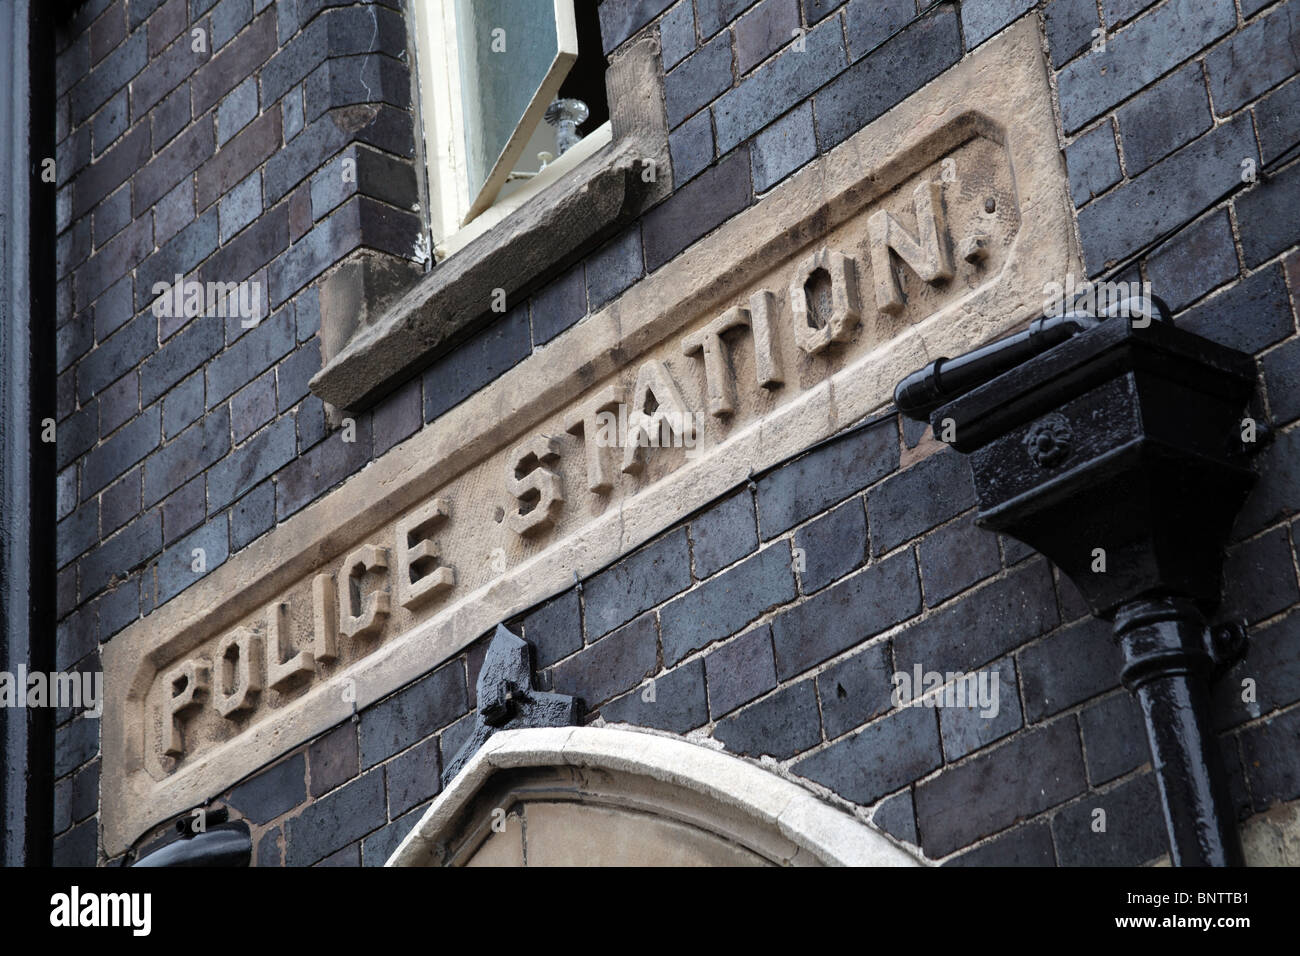 La antigua estación de policía signo, Much Wenlock, Shropshire Foto de stock